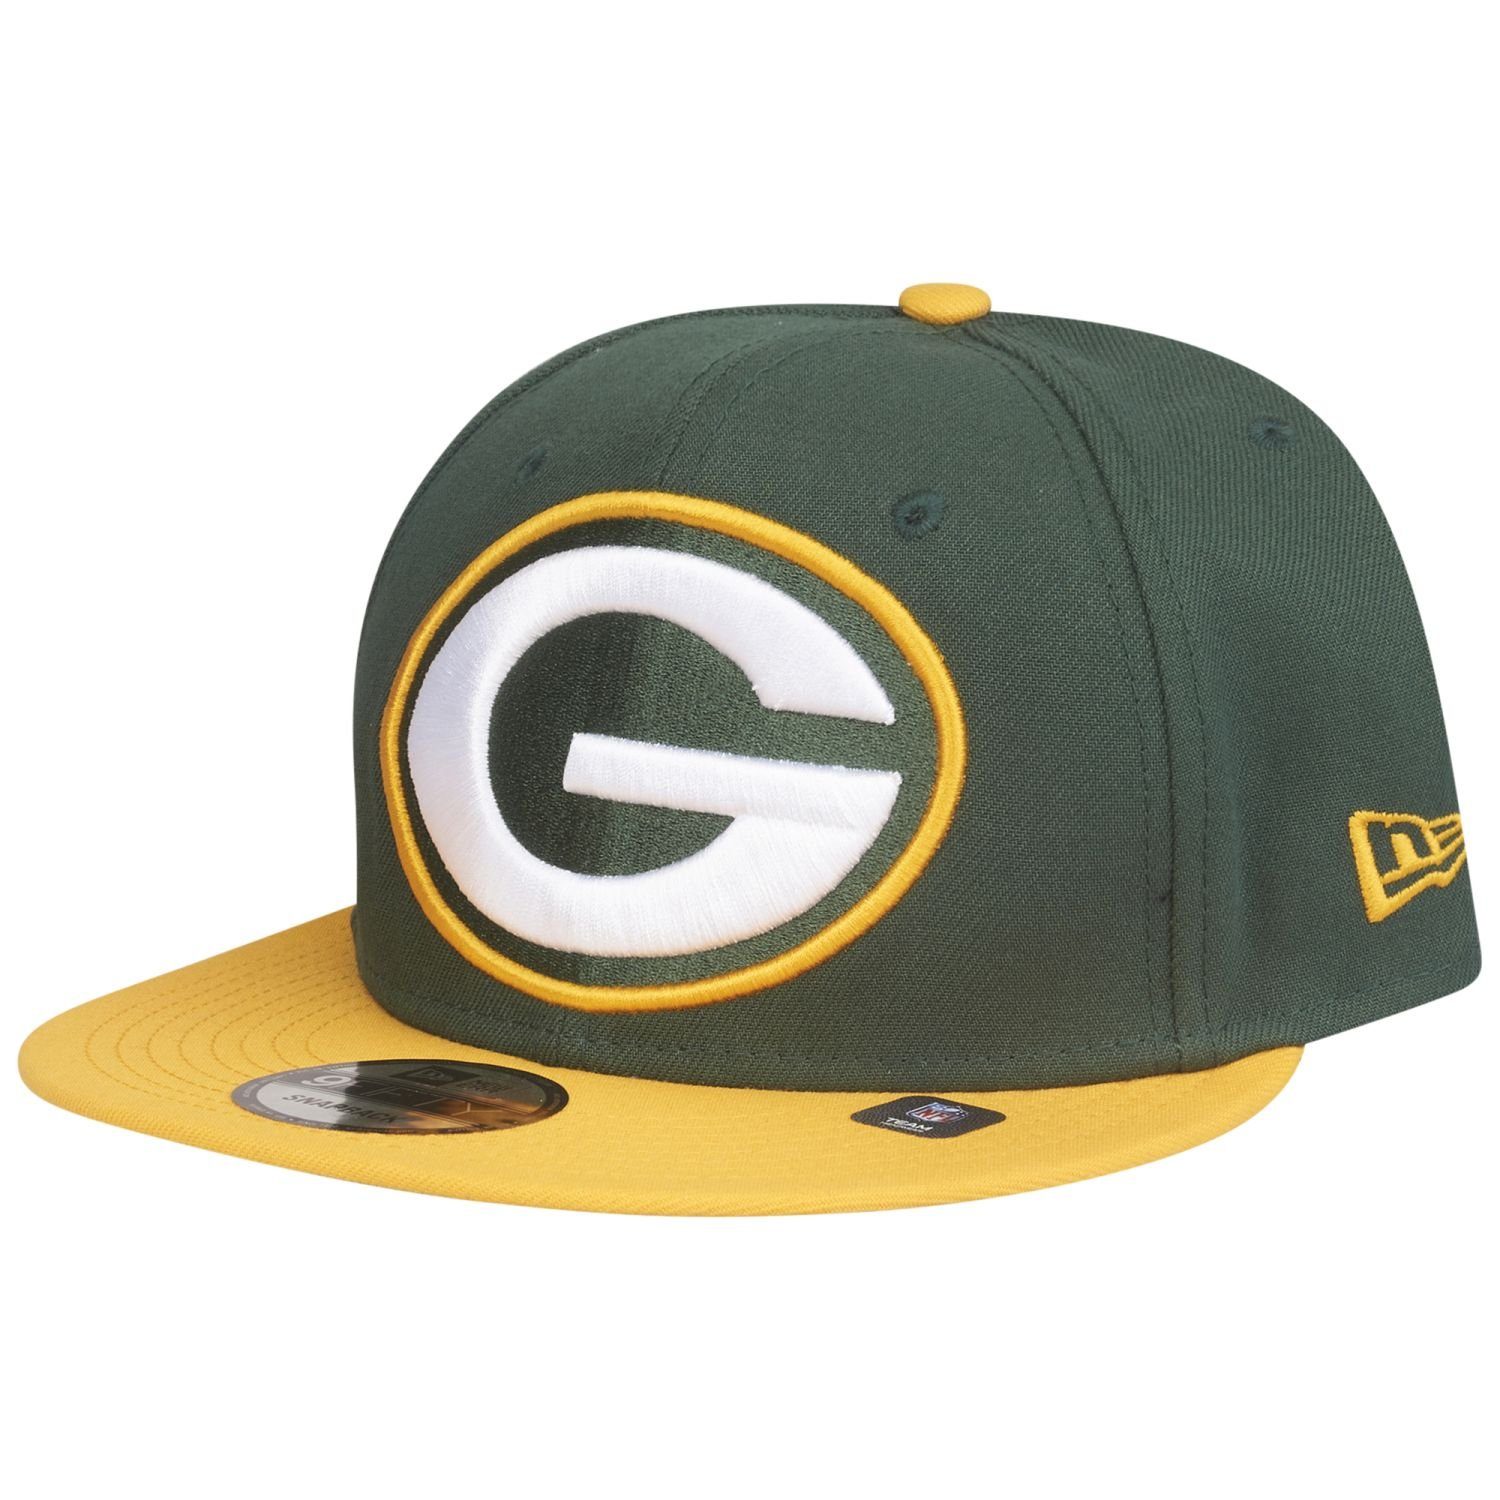 New Era Snapback Cap 9Fifty LOGO Green Bay Packers